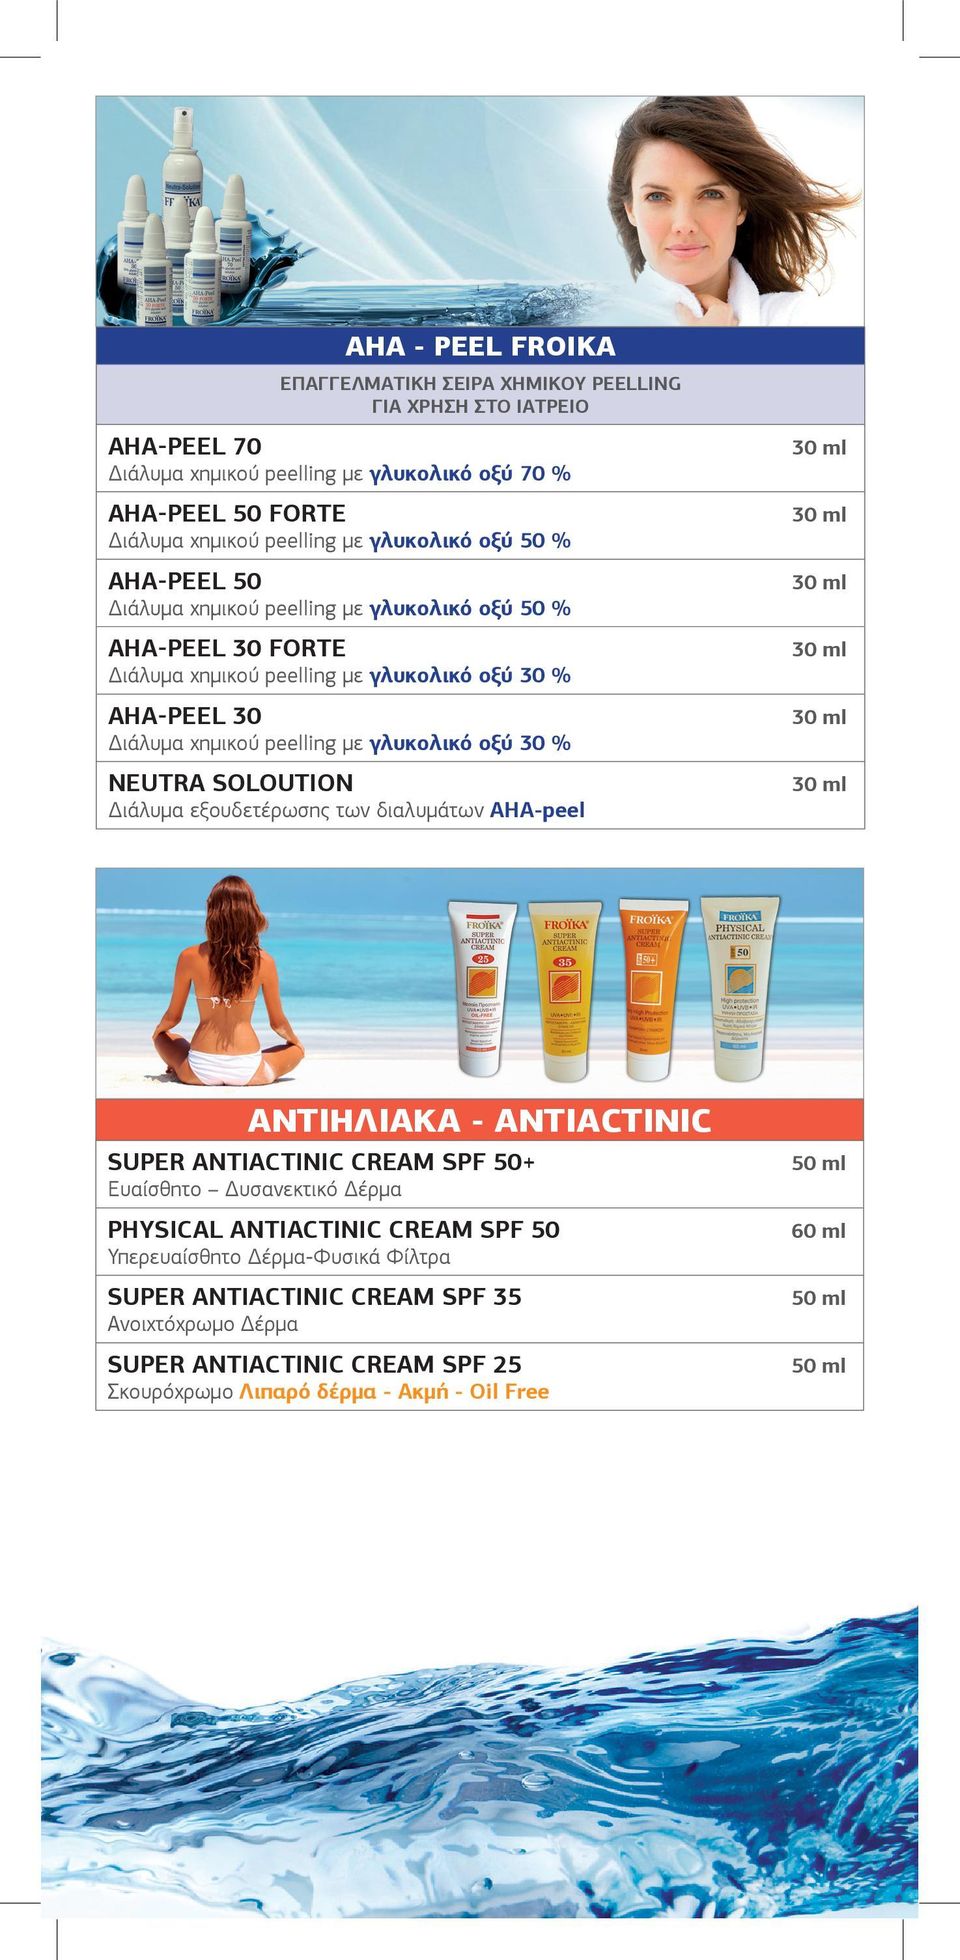 γλυκολικό οξύ 30 % NEUTRA SOLOUTION Διάλυμα εξουδετέρωσης των διαλυμάτων ΑΗΑ-peel ΑΝΤΙΗΛΙΑΚΑ - ANTIACTINIC SUPER ANTIACTINIC CREAM SPF 50+ Ευαίσθητο Δυσανεκτικό Δέρμα PHYSICAL